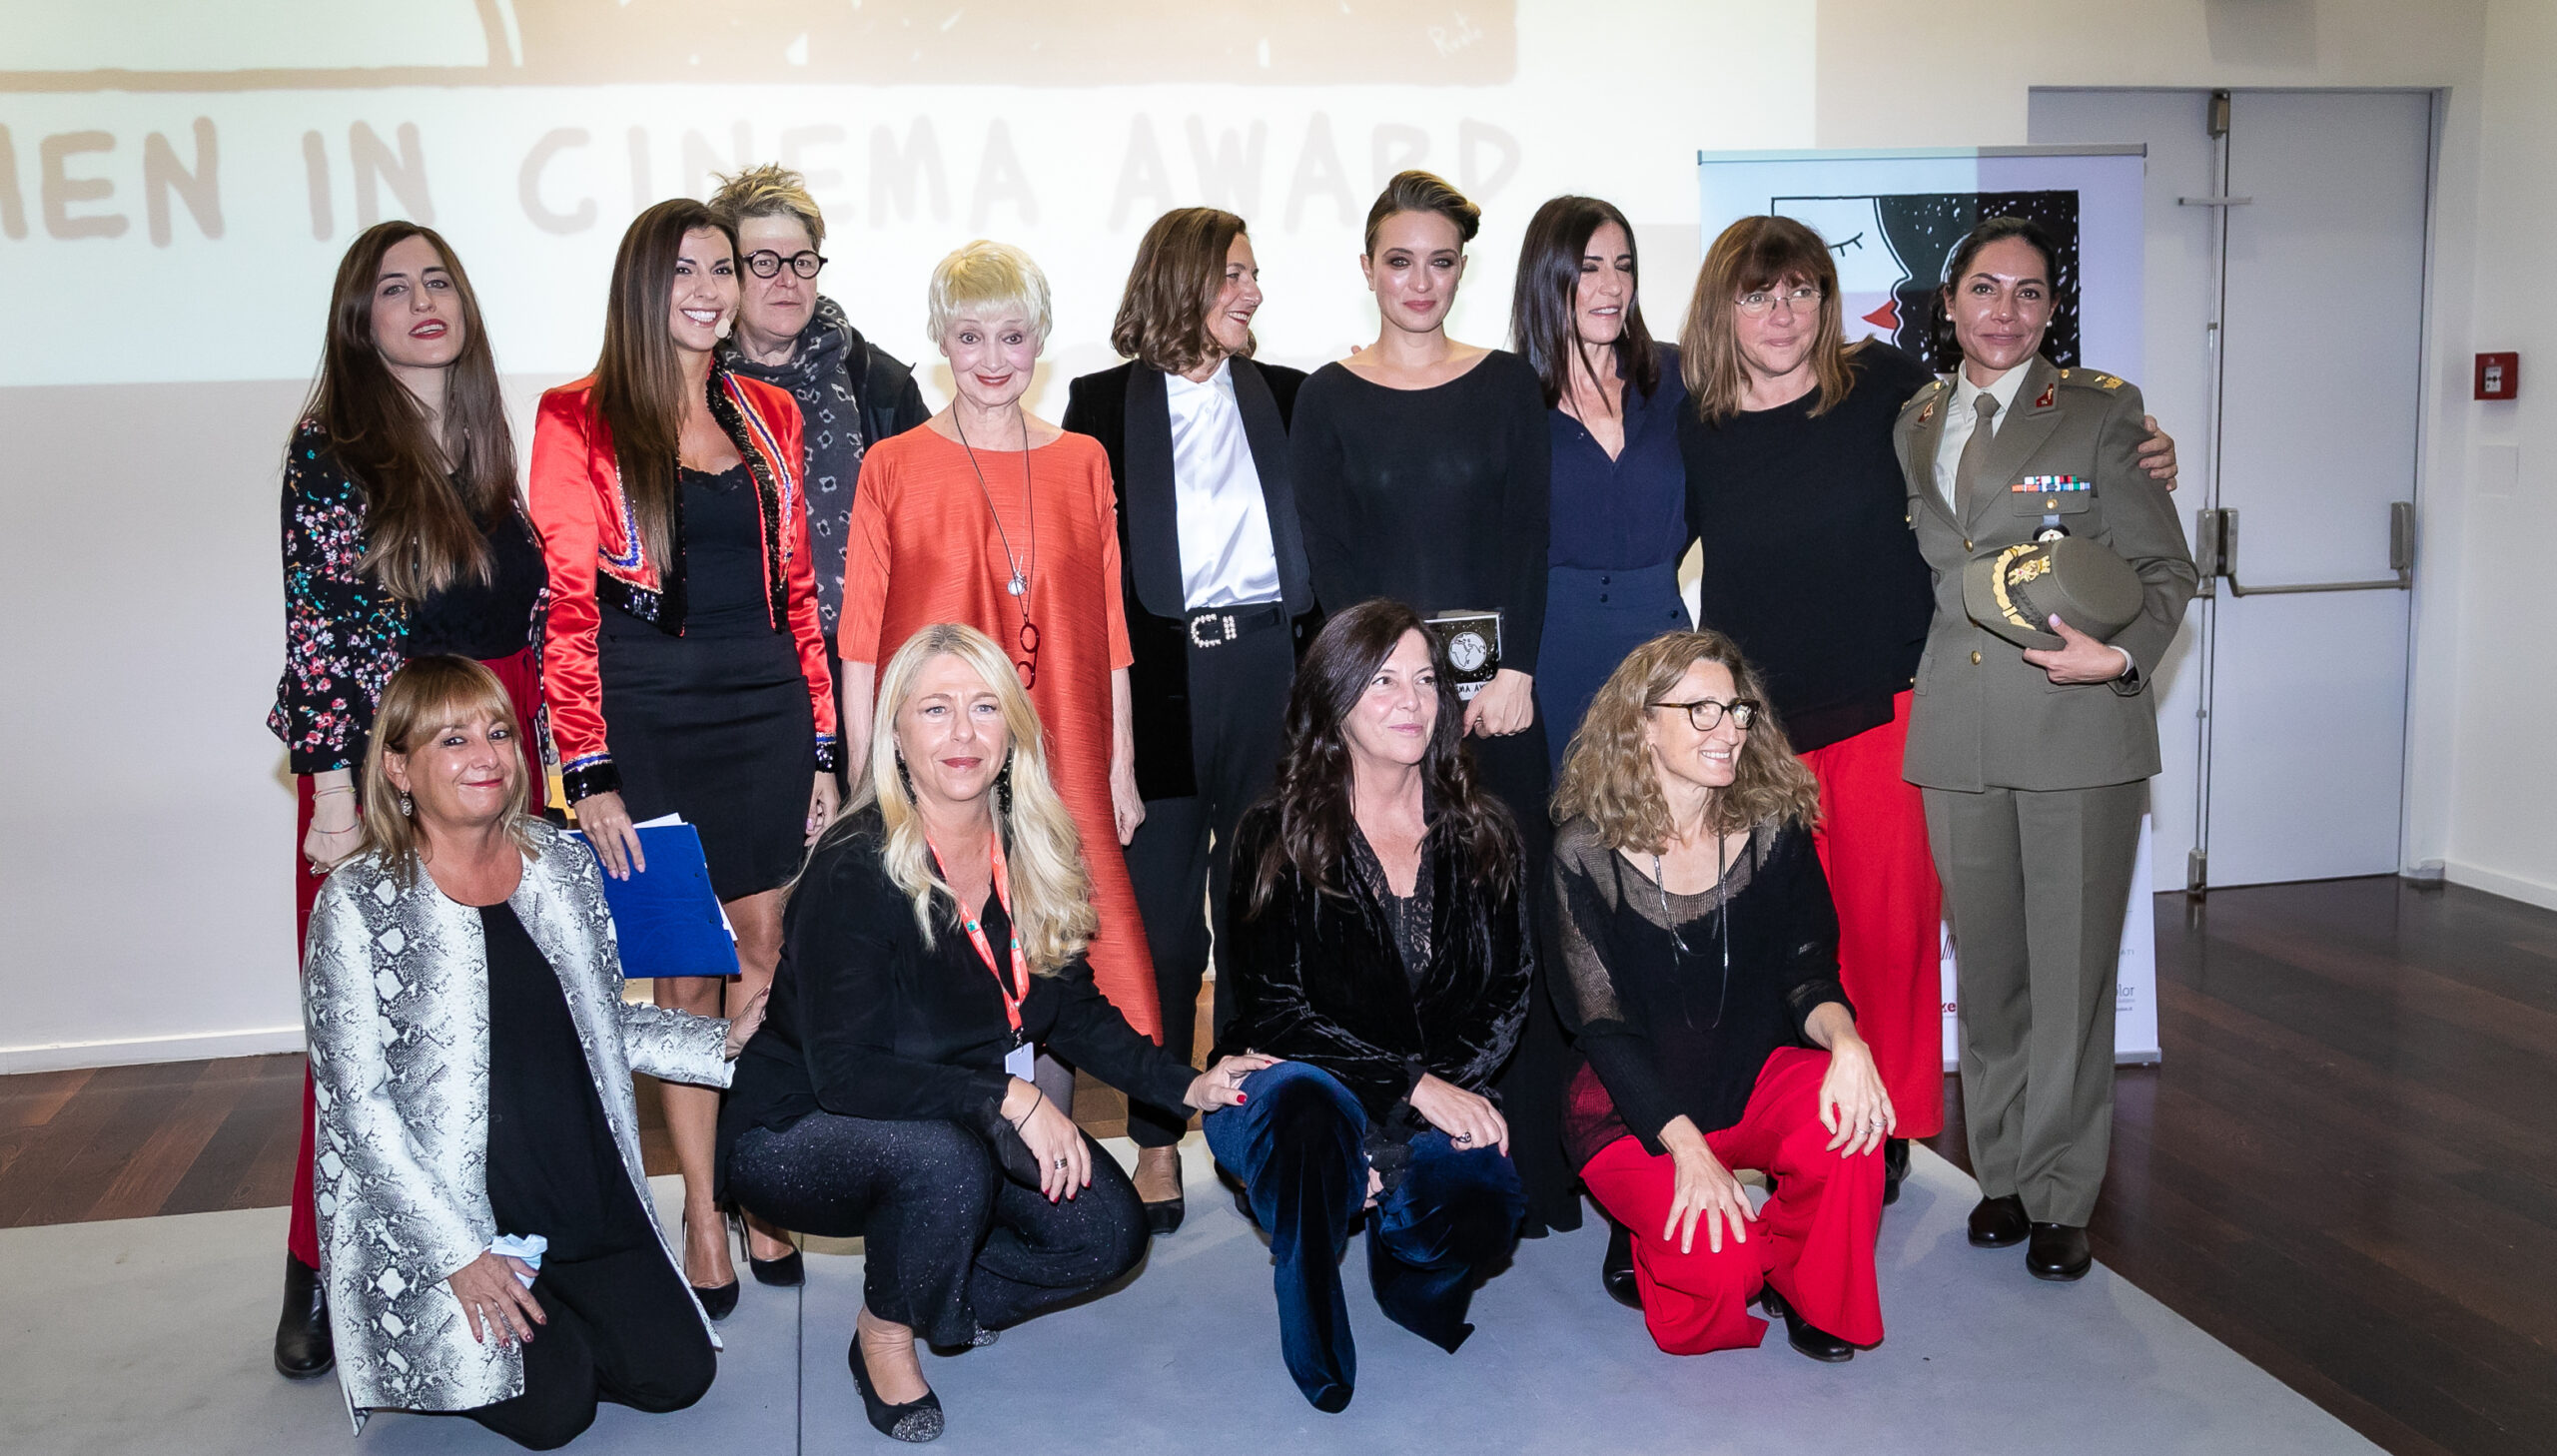 Festa del Cinema a Roma: Women in Cinema Award protagonista della parità di genere